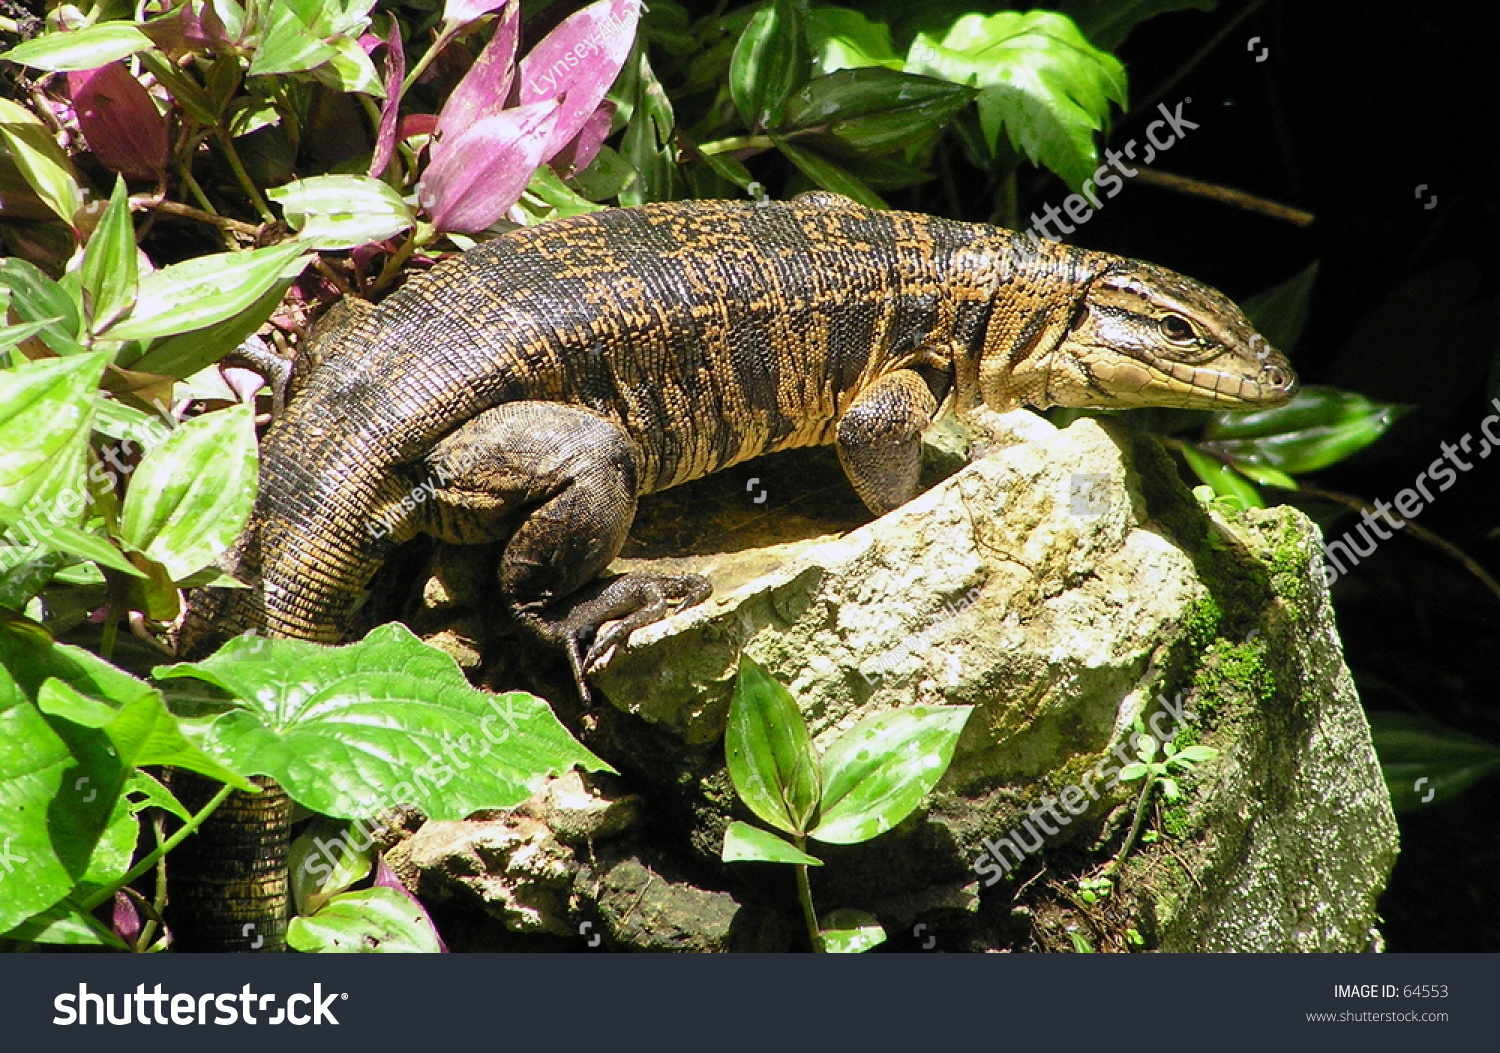 iguana or tegu